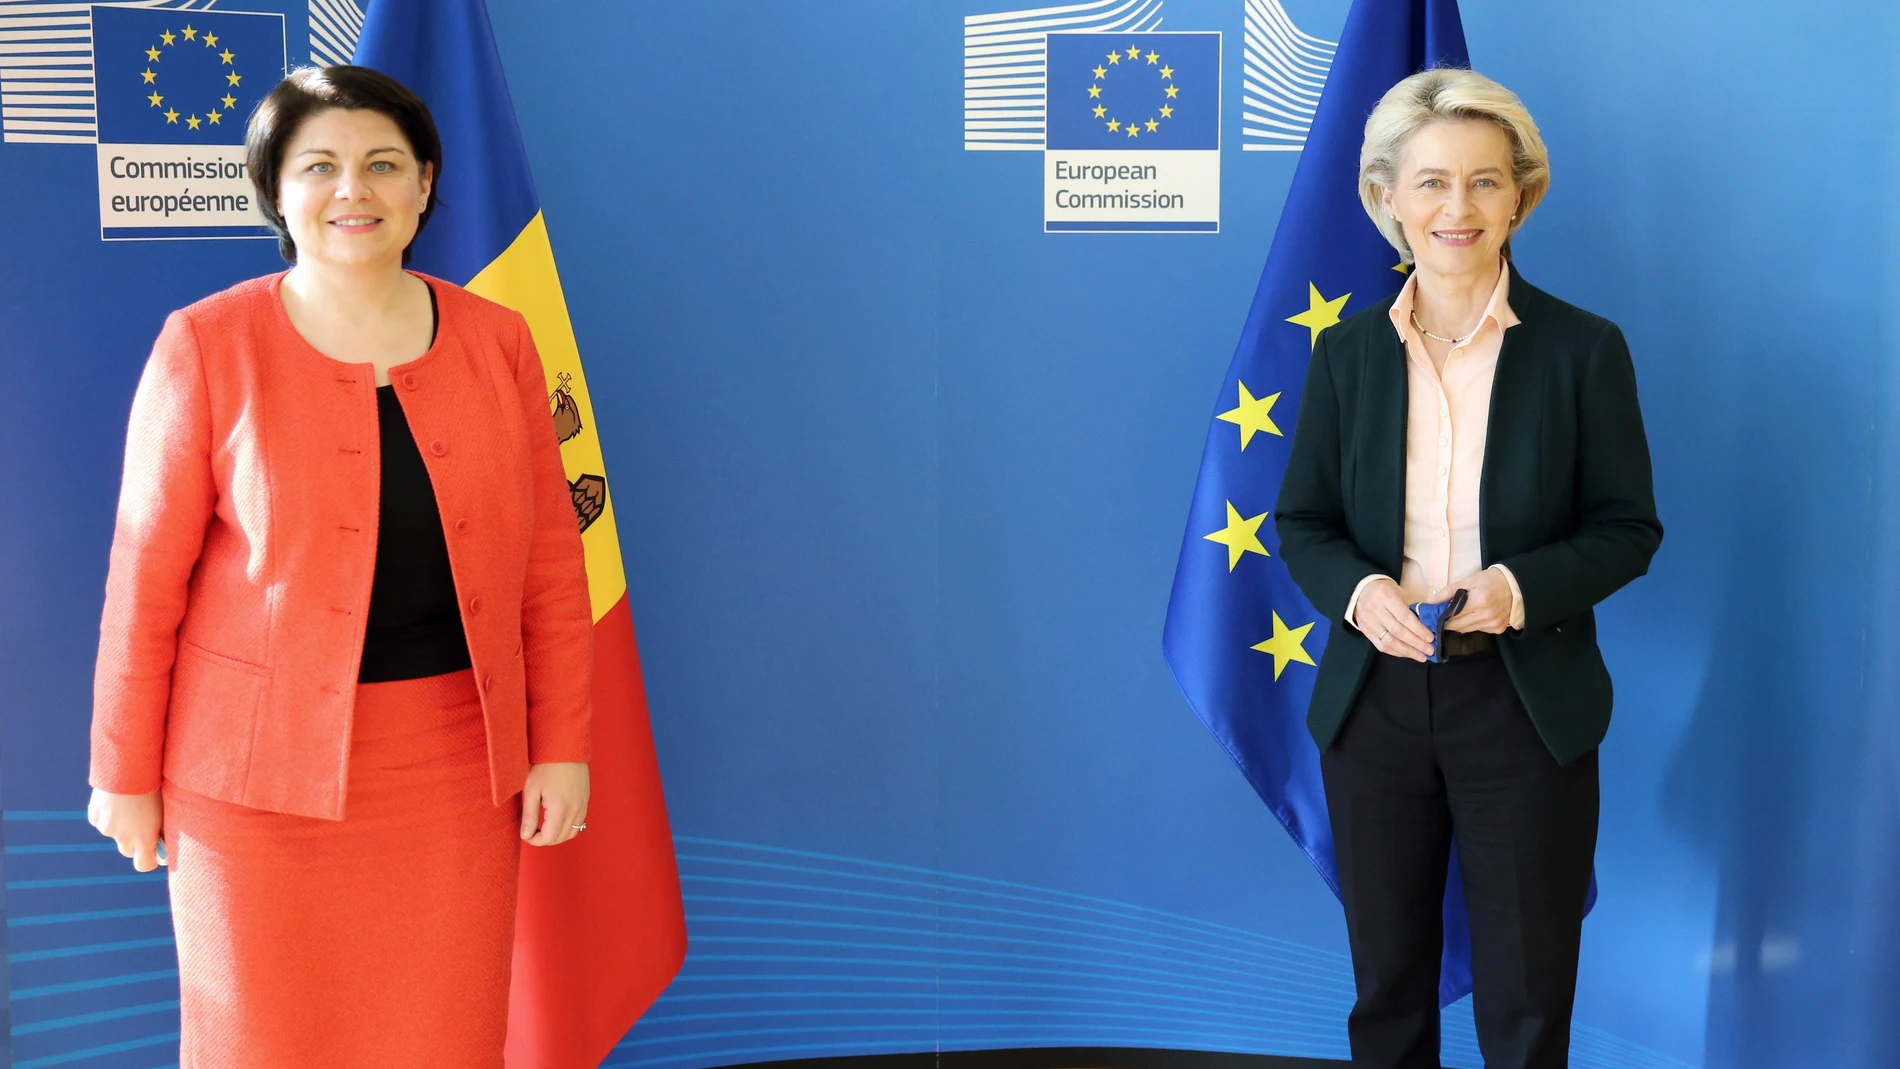 La presidenta de la Comisión Europea, Ursula Von der Leyen, dijo hoy que “la Unión Europea apoya a Moldavia” para hacer frente a su problema de suministro de gas